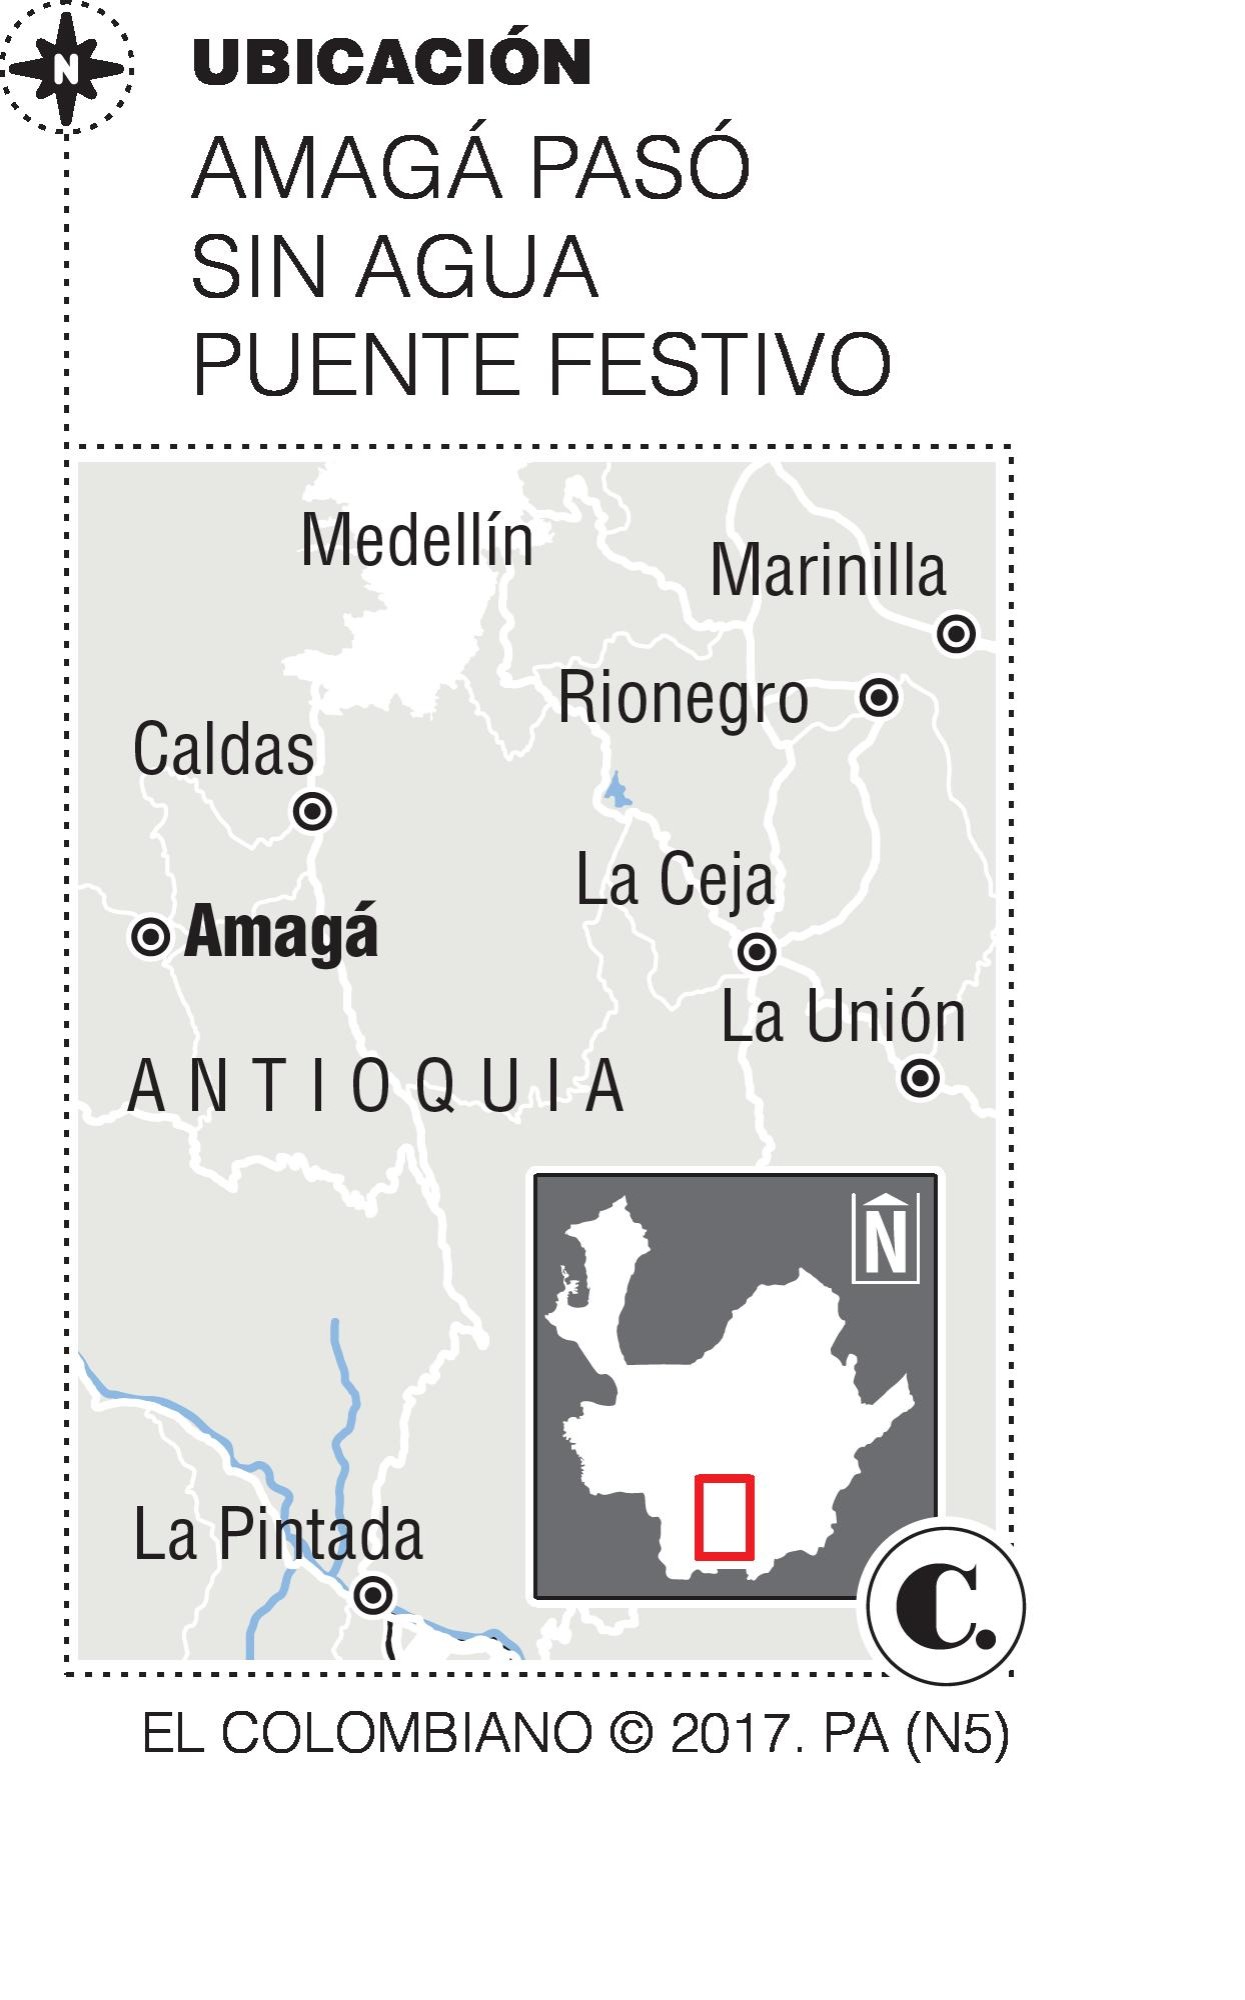 Comerciantes, los más afectados por daño del acueducto en Amagá